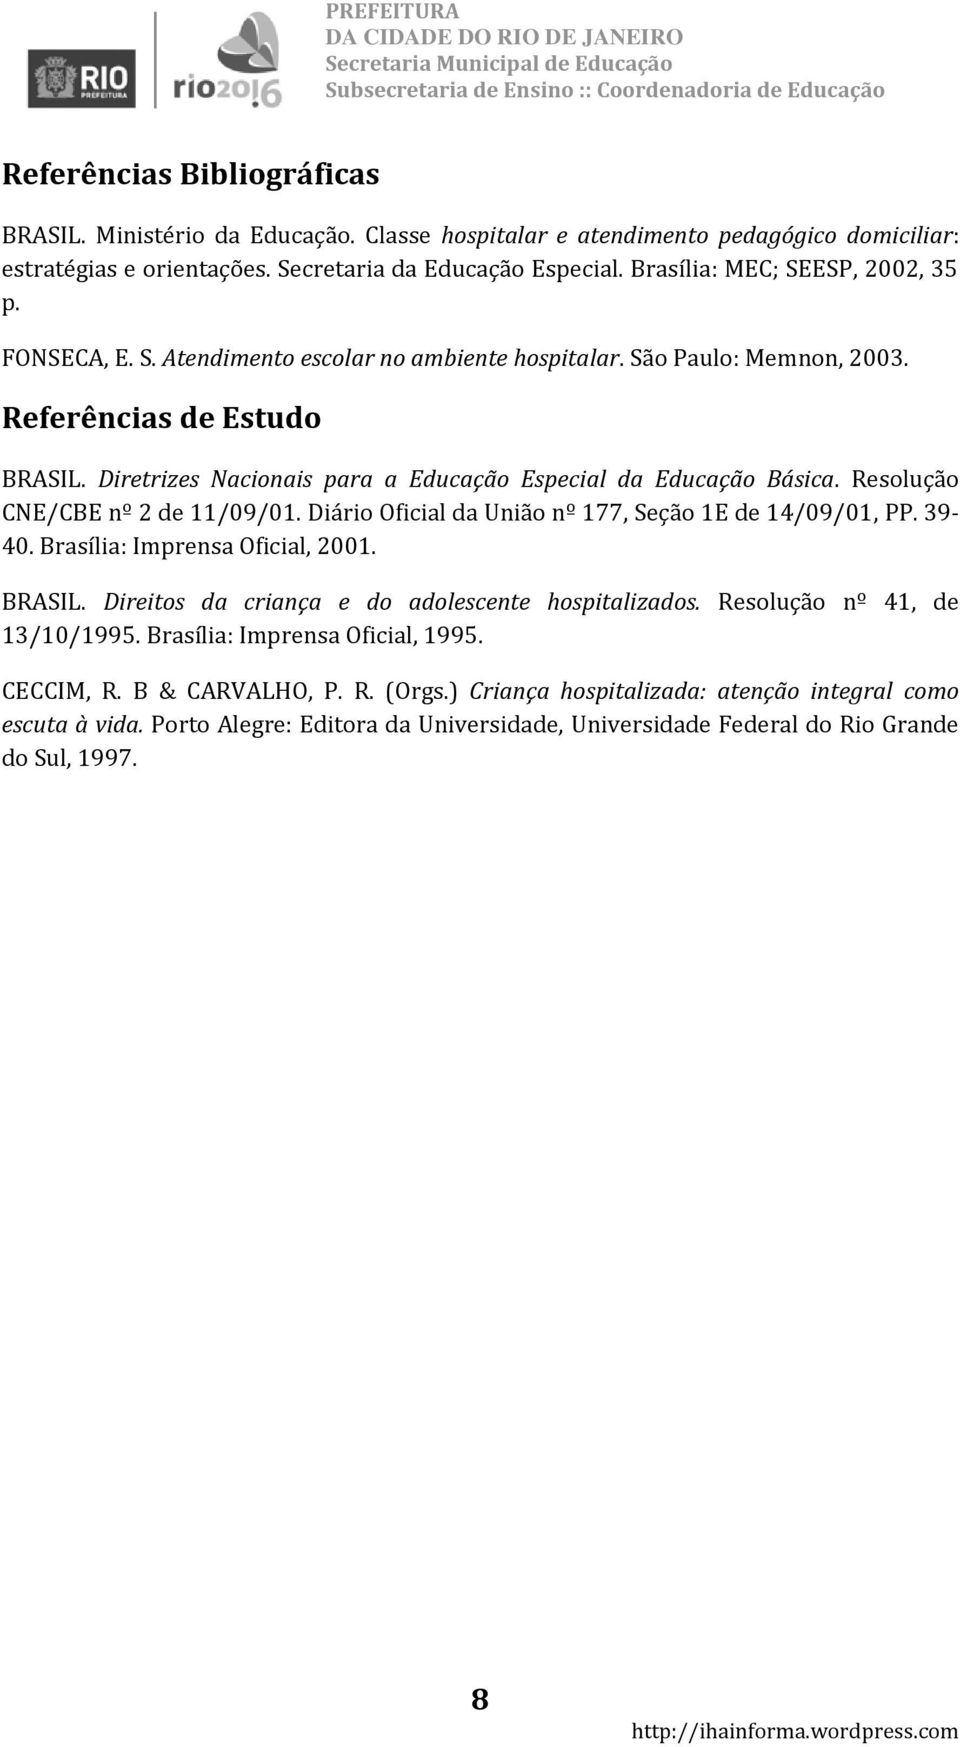 Diretrizes Nacionais para a Educação Especial da Educação Básica. Resolução CNE/CBE nº 2 de 11/09/01. Diário Oficial da União nº 177, Seção 1E de 14/09/01, PP. 39-40. Brasília: Imprensa Oficial, 2001.